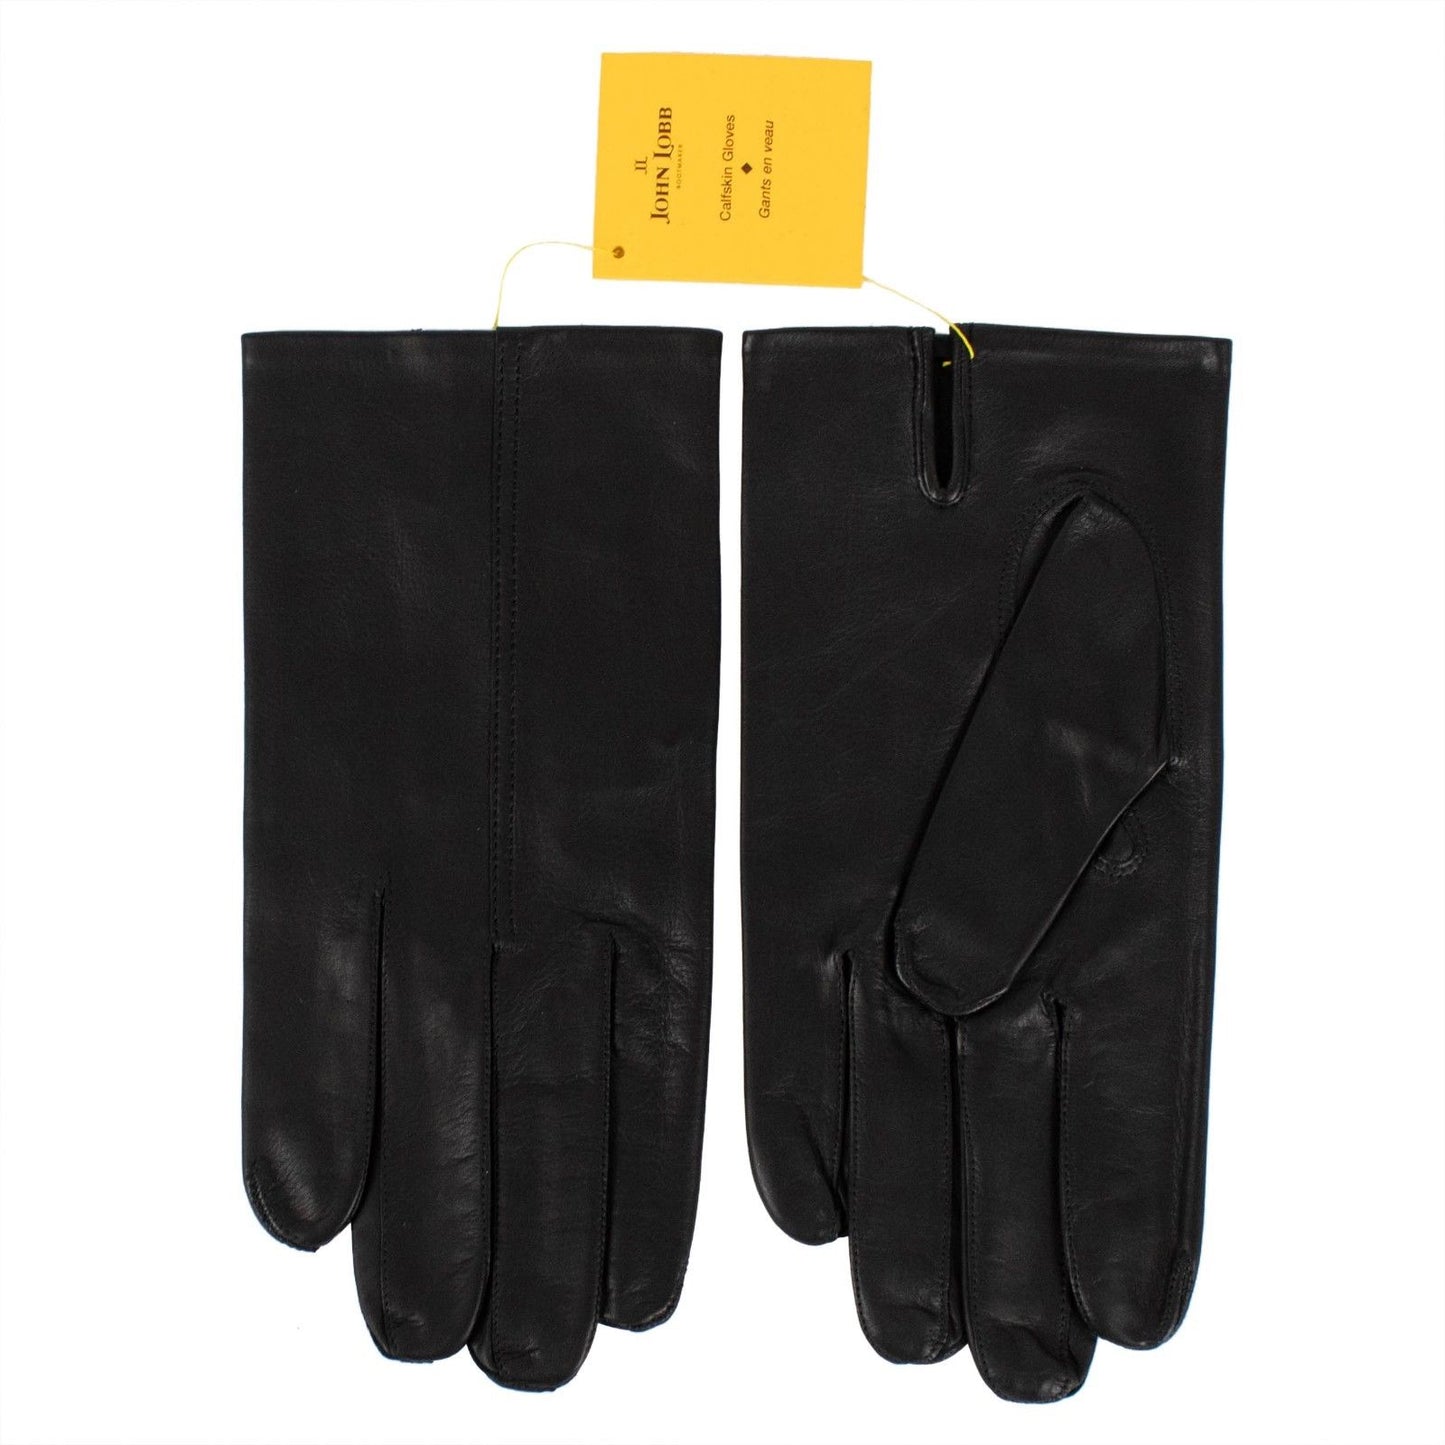 John Lobb Calfskin Leather Gloves - Black